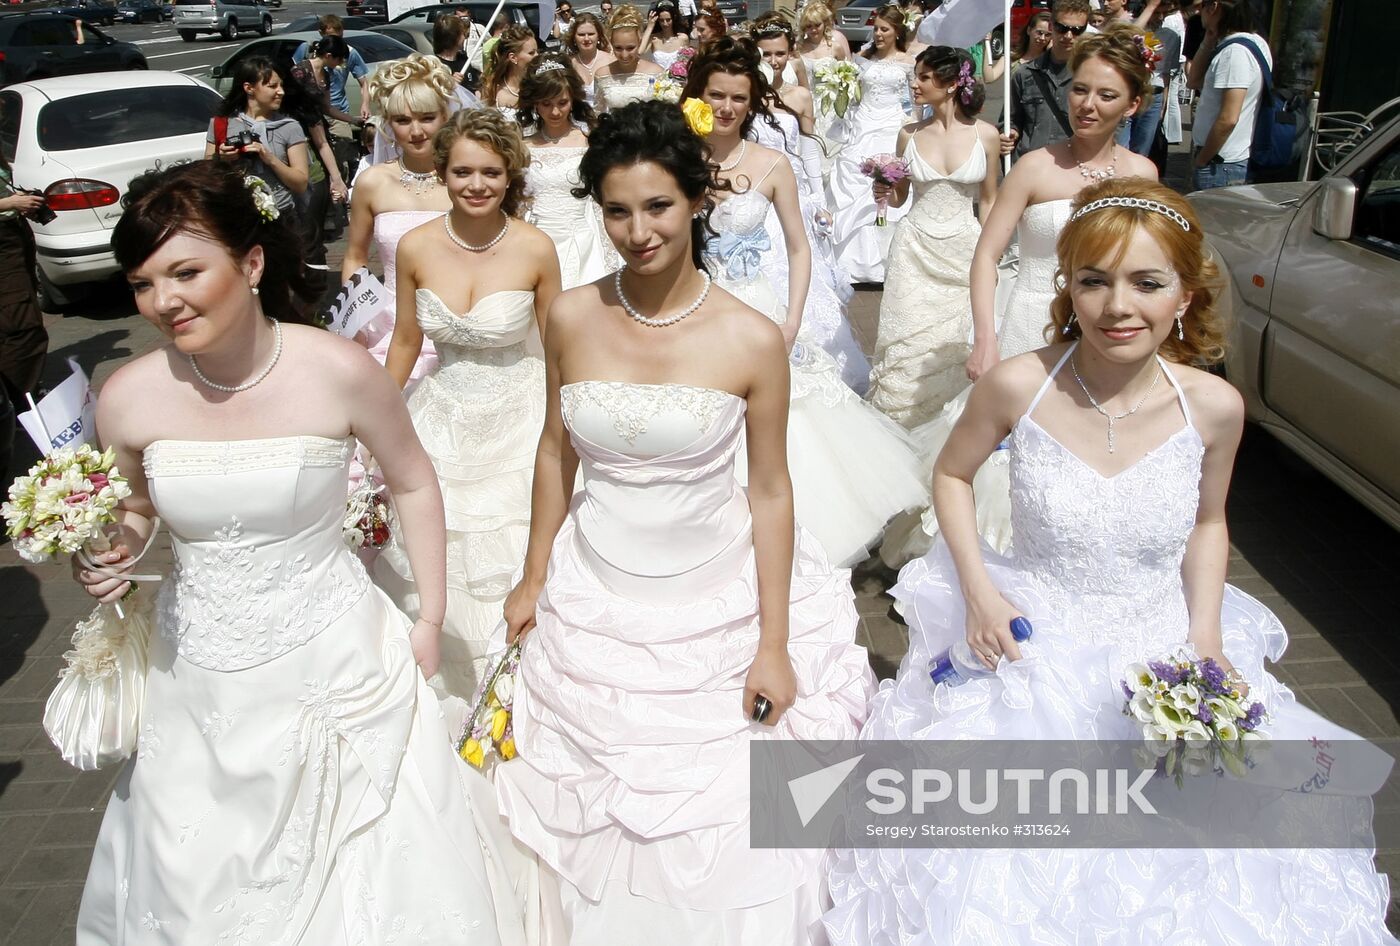 A bride parade